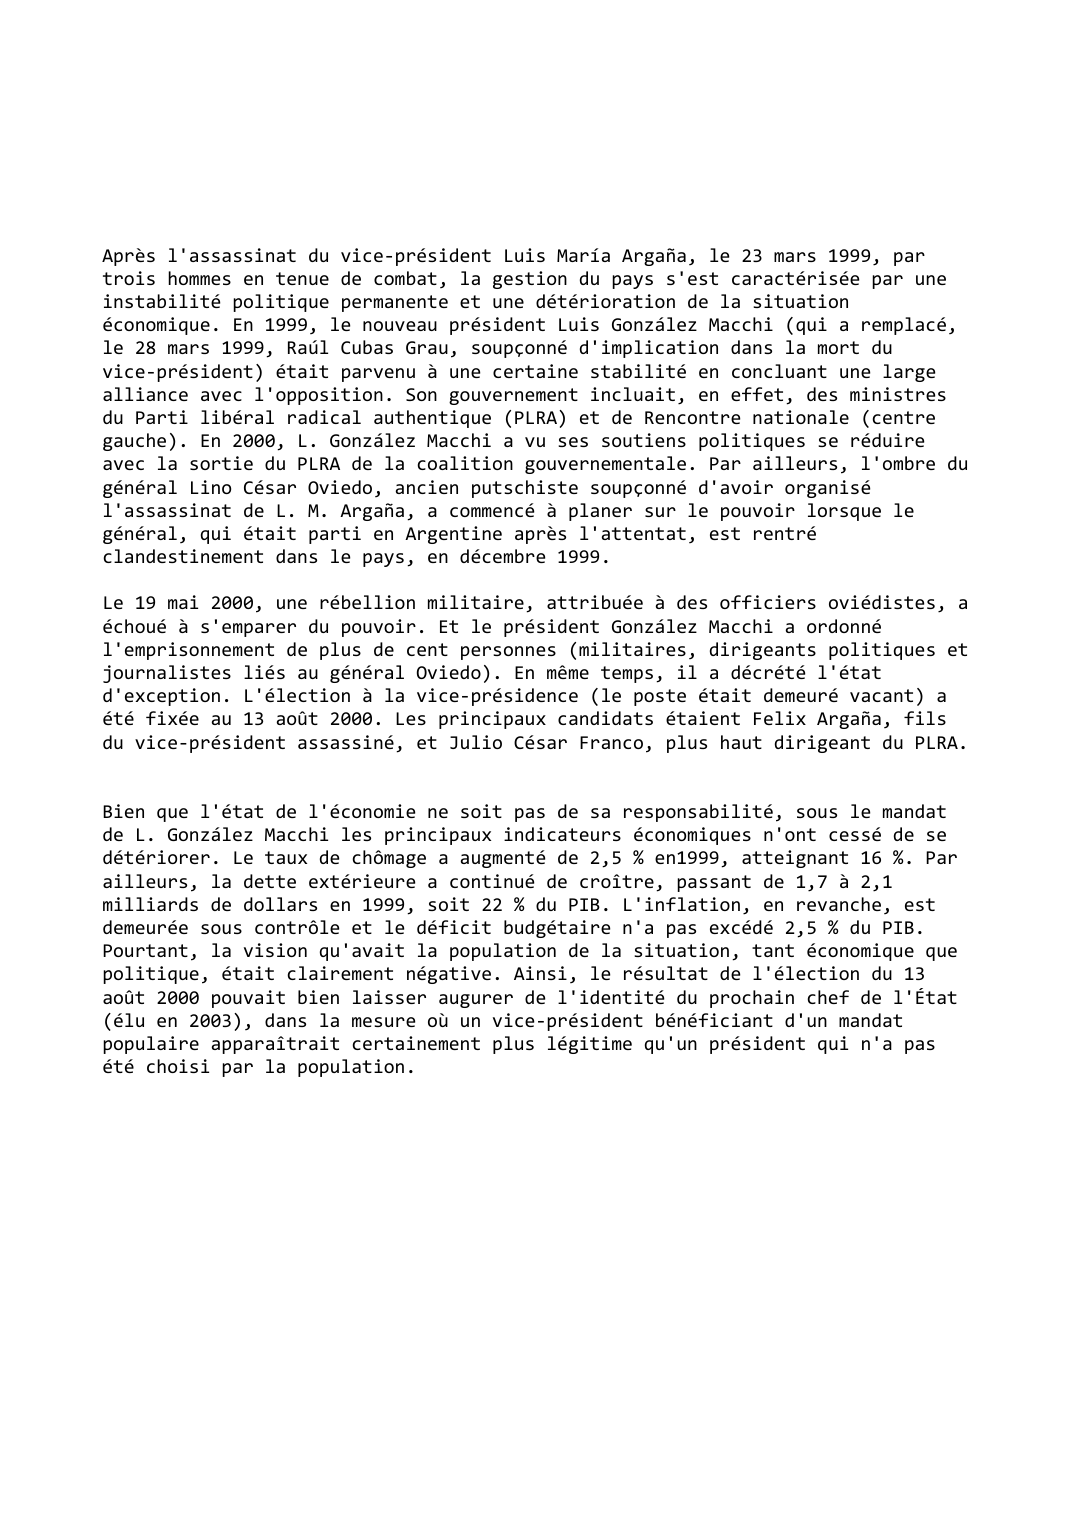 Prévisualisation du document Paraguay (1999-2000): Grande instabilité politique